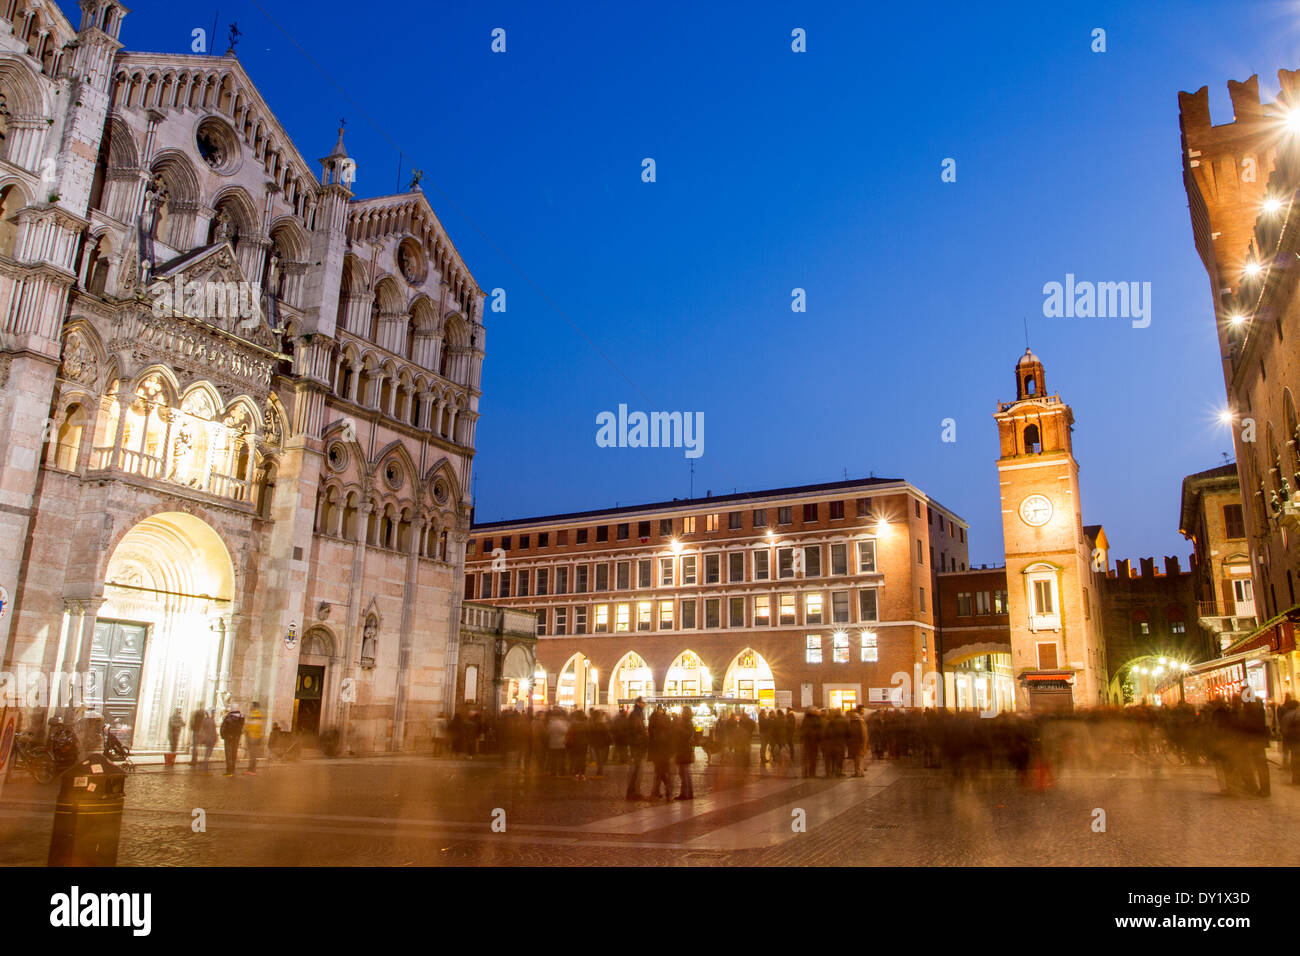 Piazza della Cattedrale, Ferrara, Emilia Romagna, Italy Stock Photo